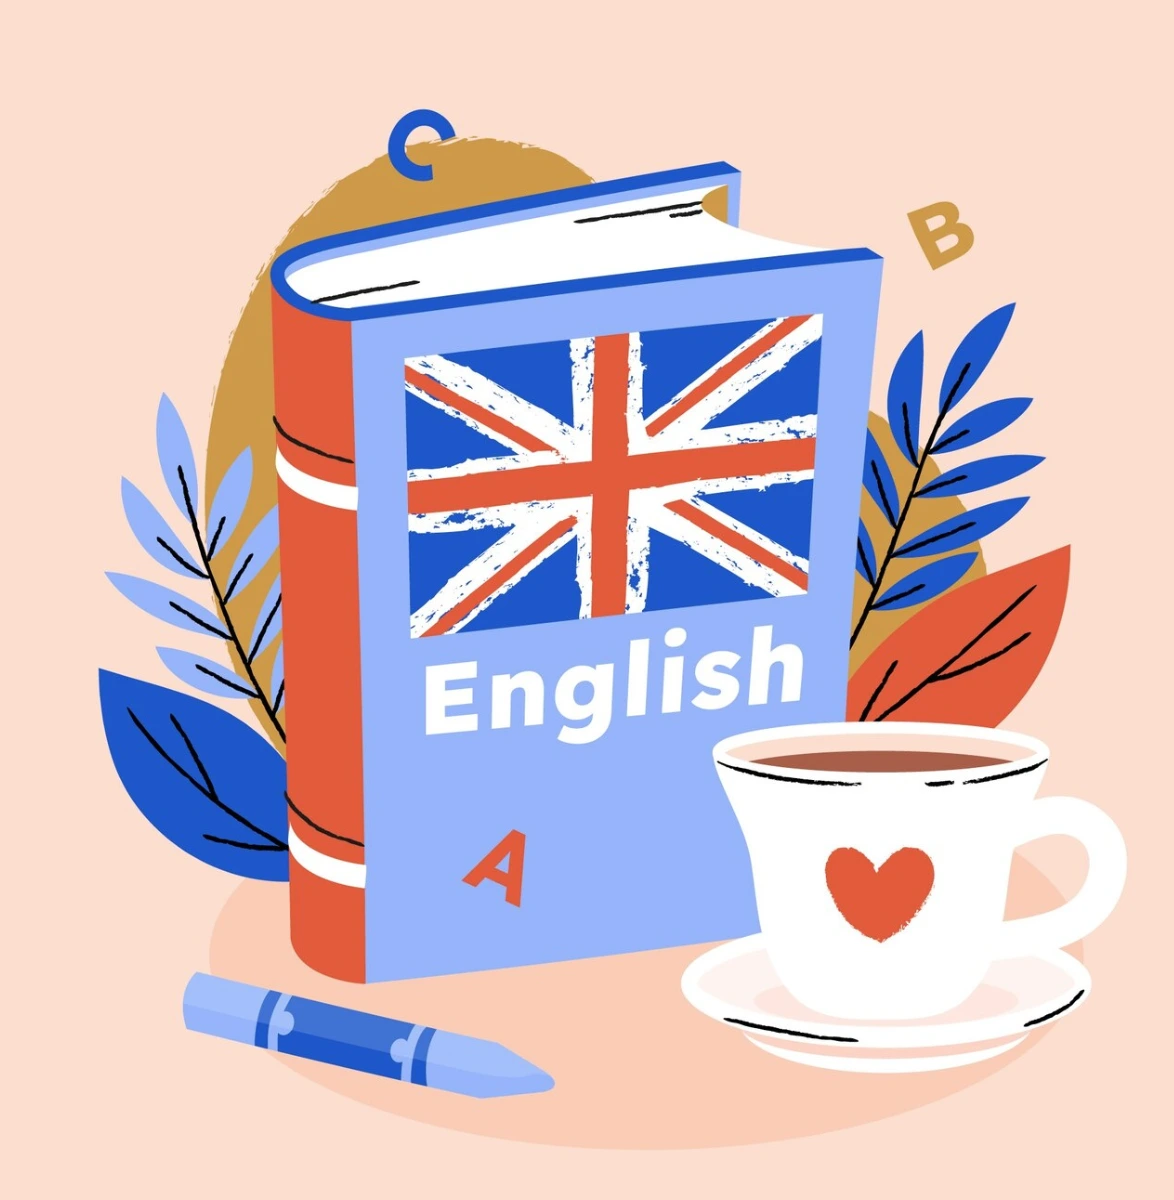 سرگرمی حین یادگیری زبان انگلیسی راهی برای برانگیختن انگیزه